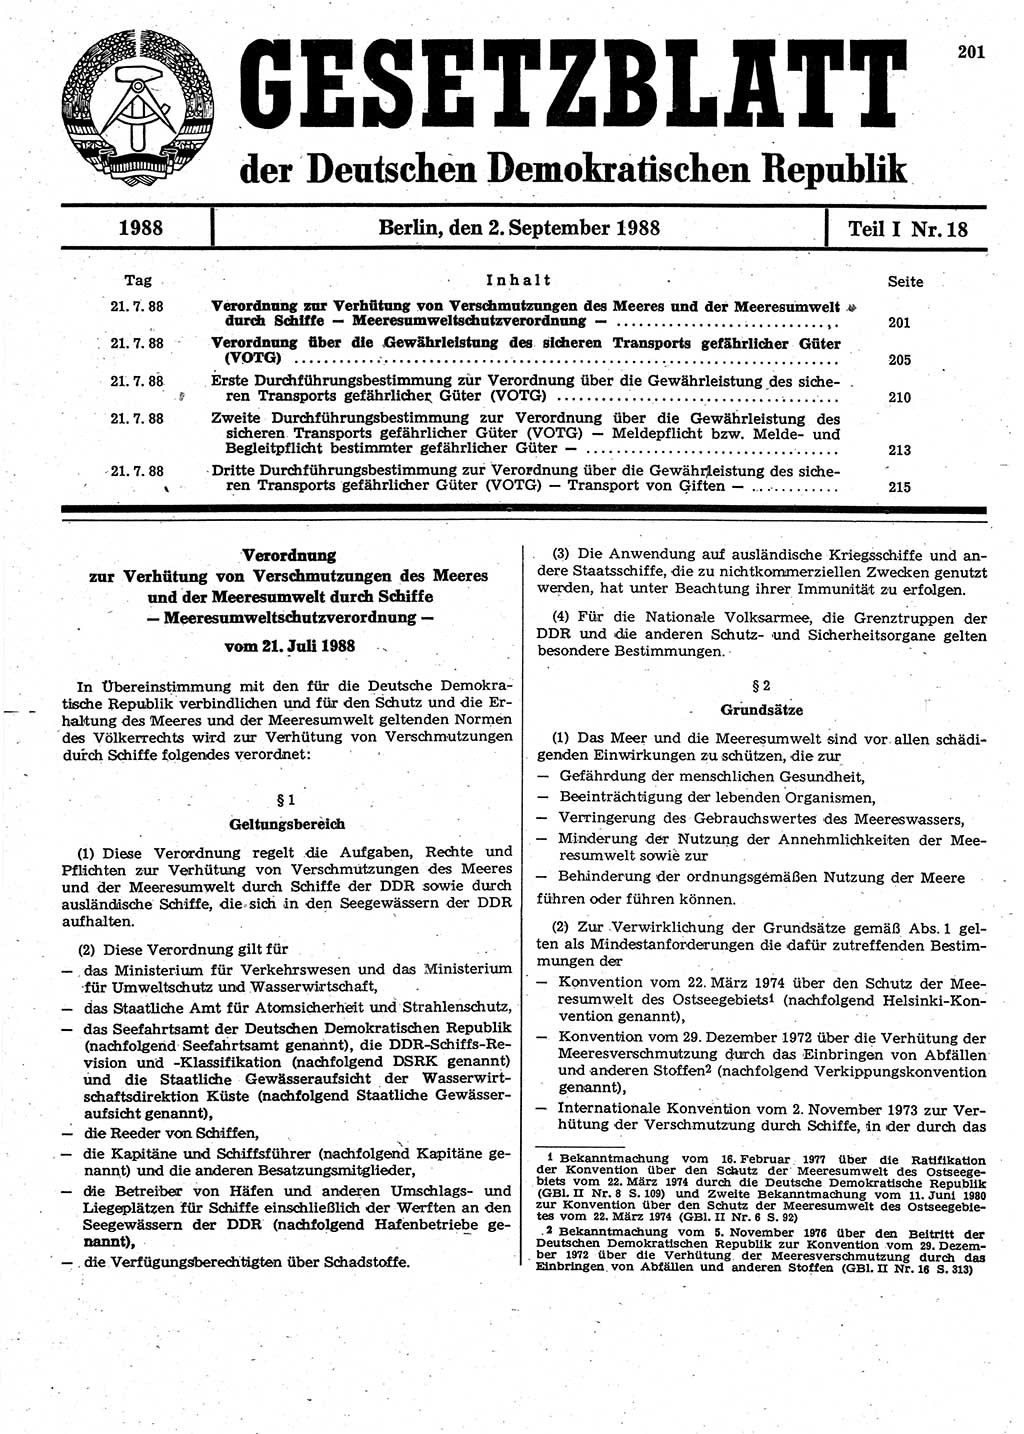 Gesetzblatt (GBl.) der Deutschen Demokratischen Republik (DDR) Teil Ⅰ 1988, Seite 201 (GBl. DDR Ⅰ 1988, S. 201)